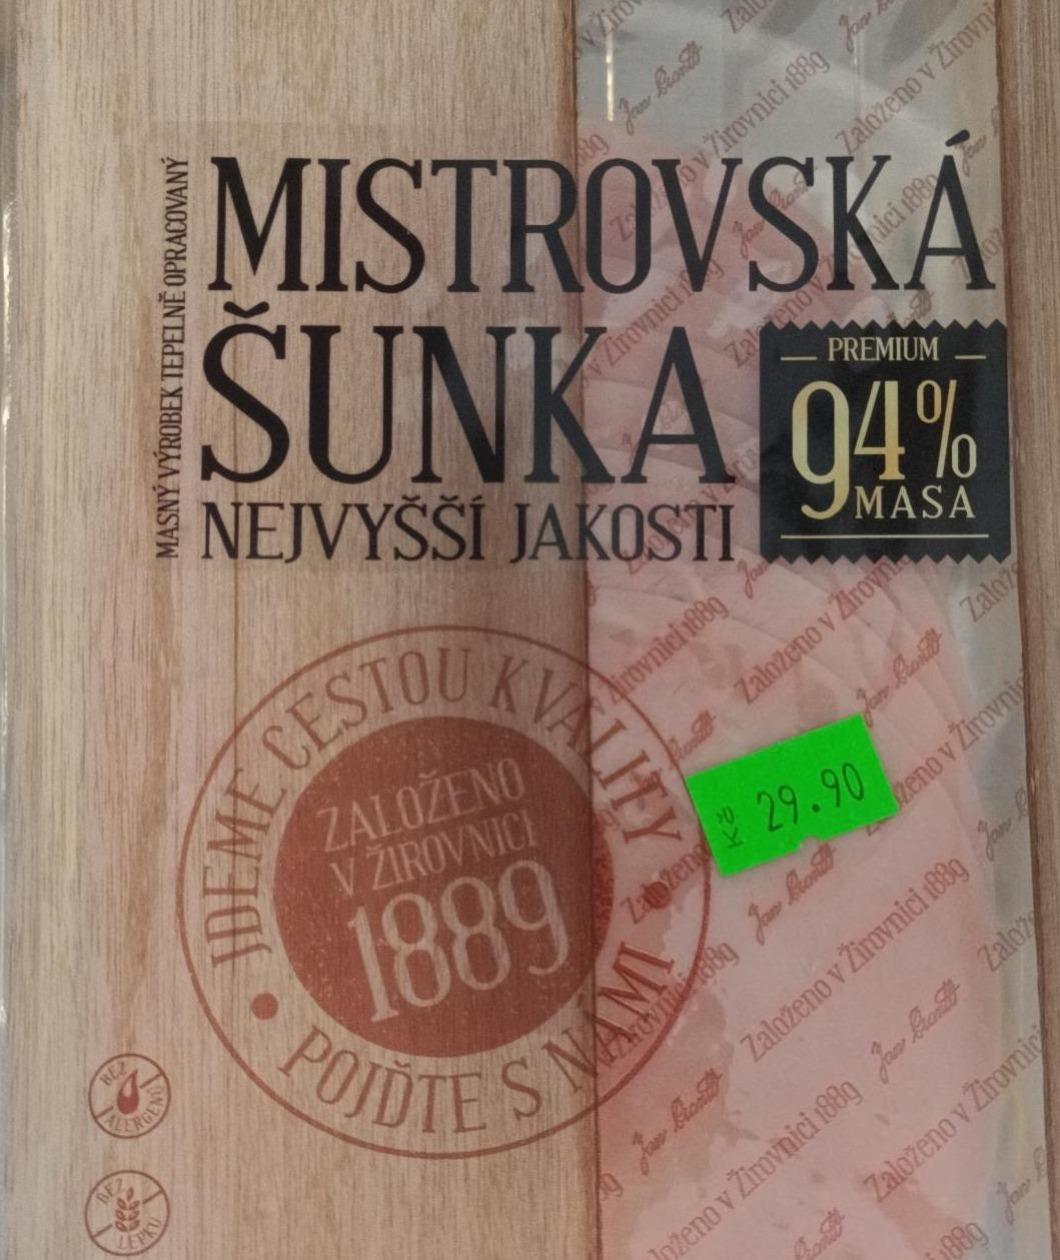 Fotografie - Mistrovská šunka nejvyšší jakosti premium 94% masa Prantl